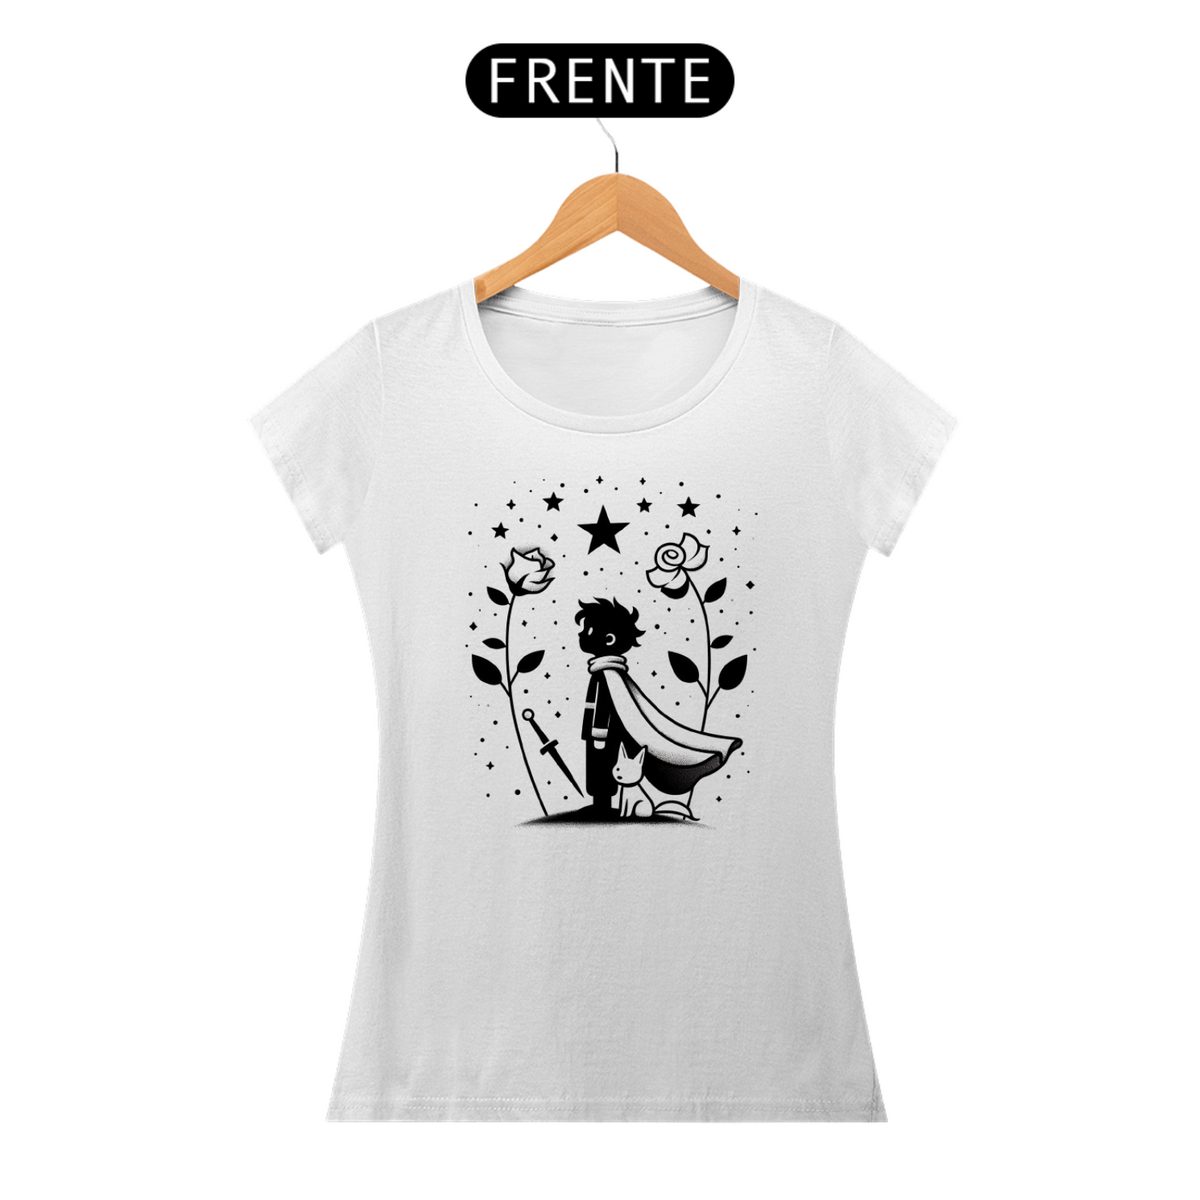 Nome do produto: Camiseta Feminina Pequeno Príncipe e Estrelas